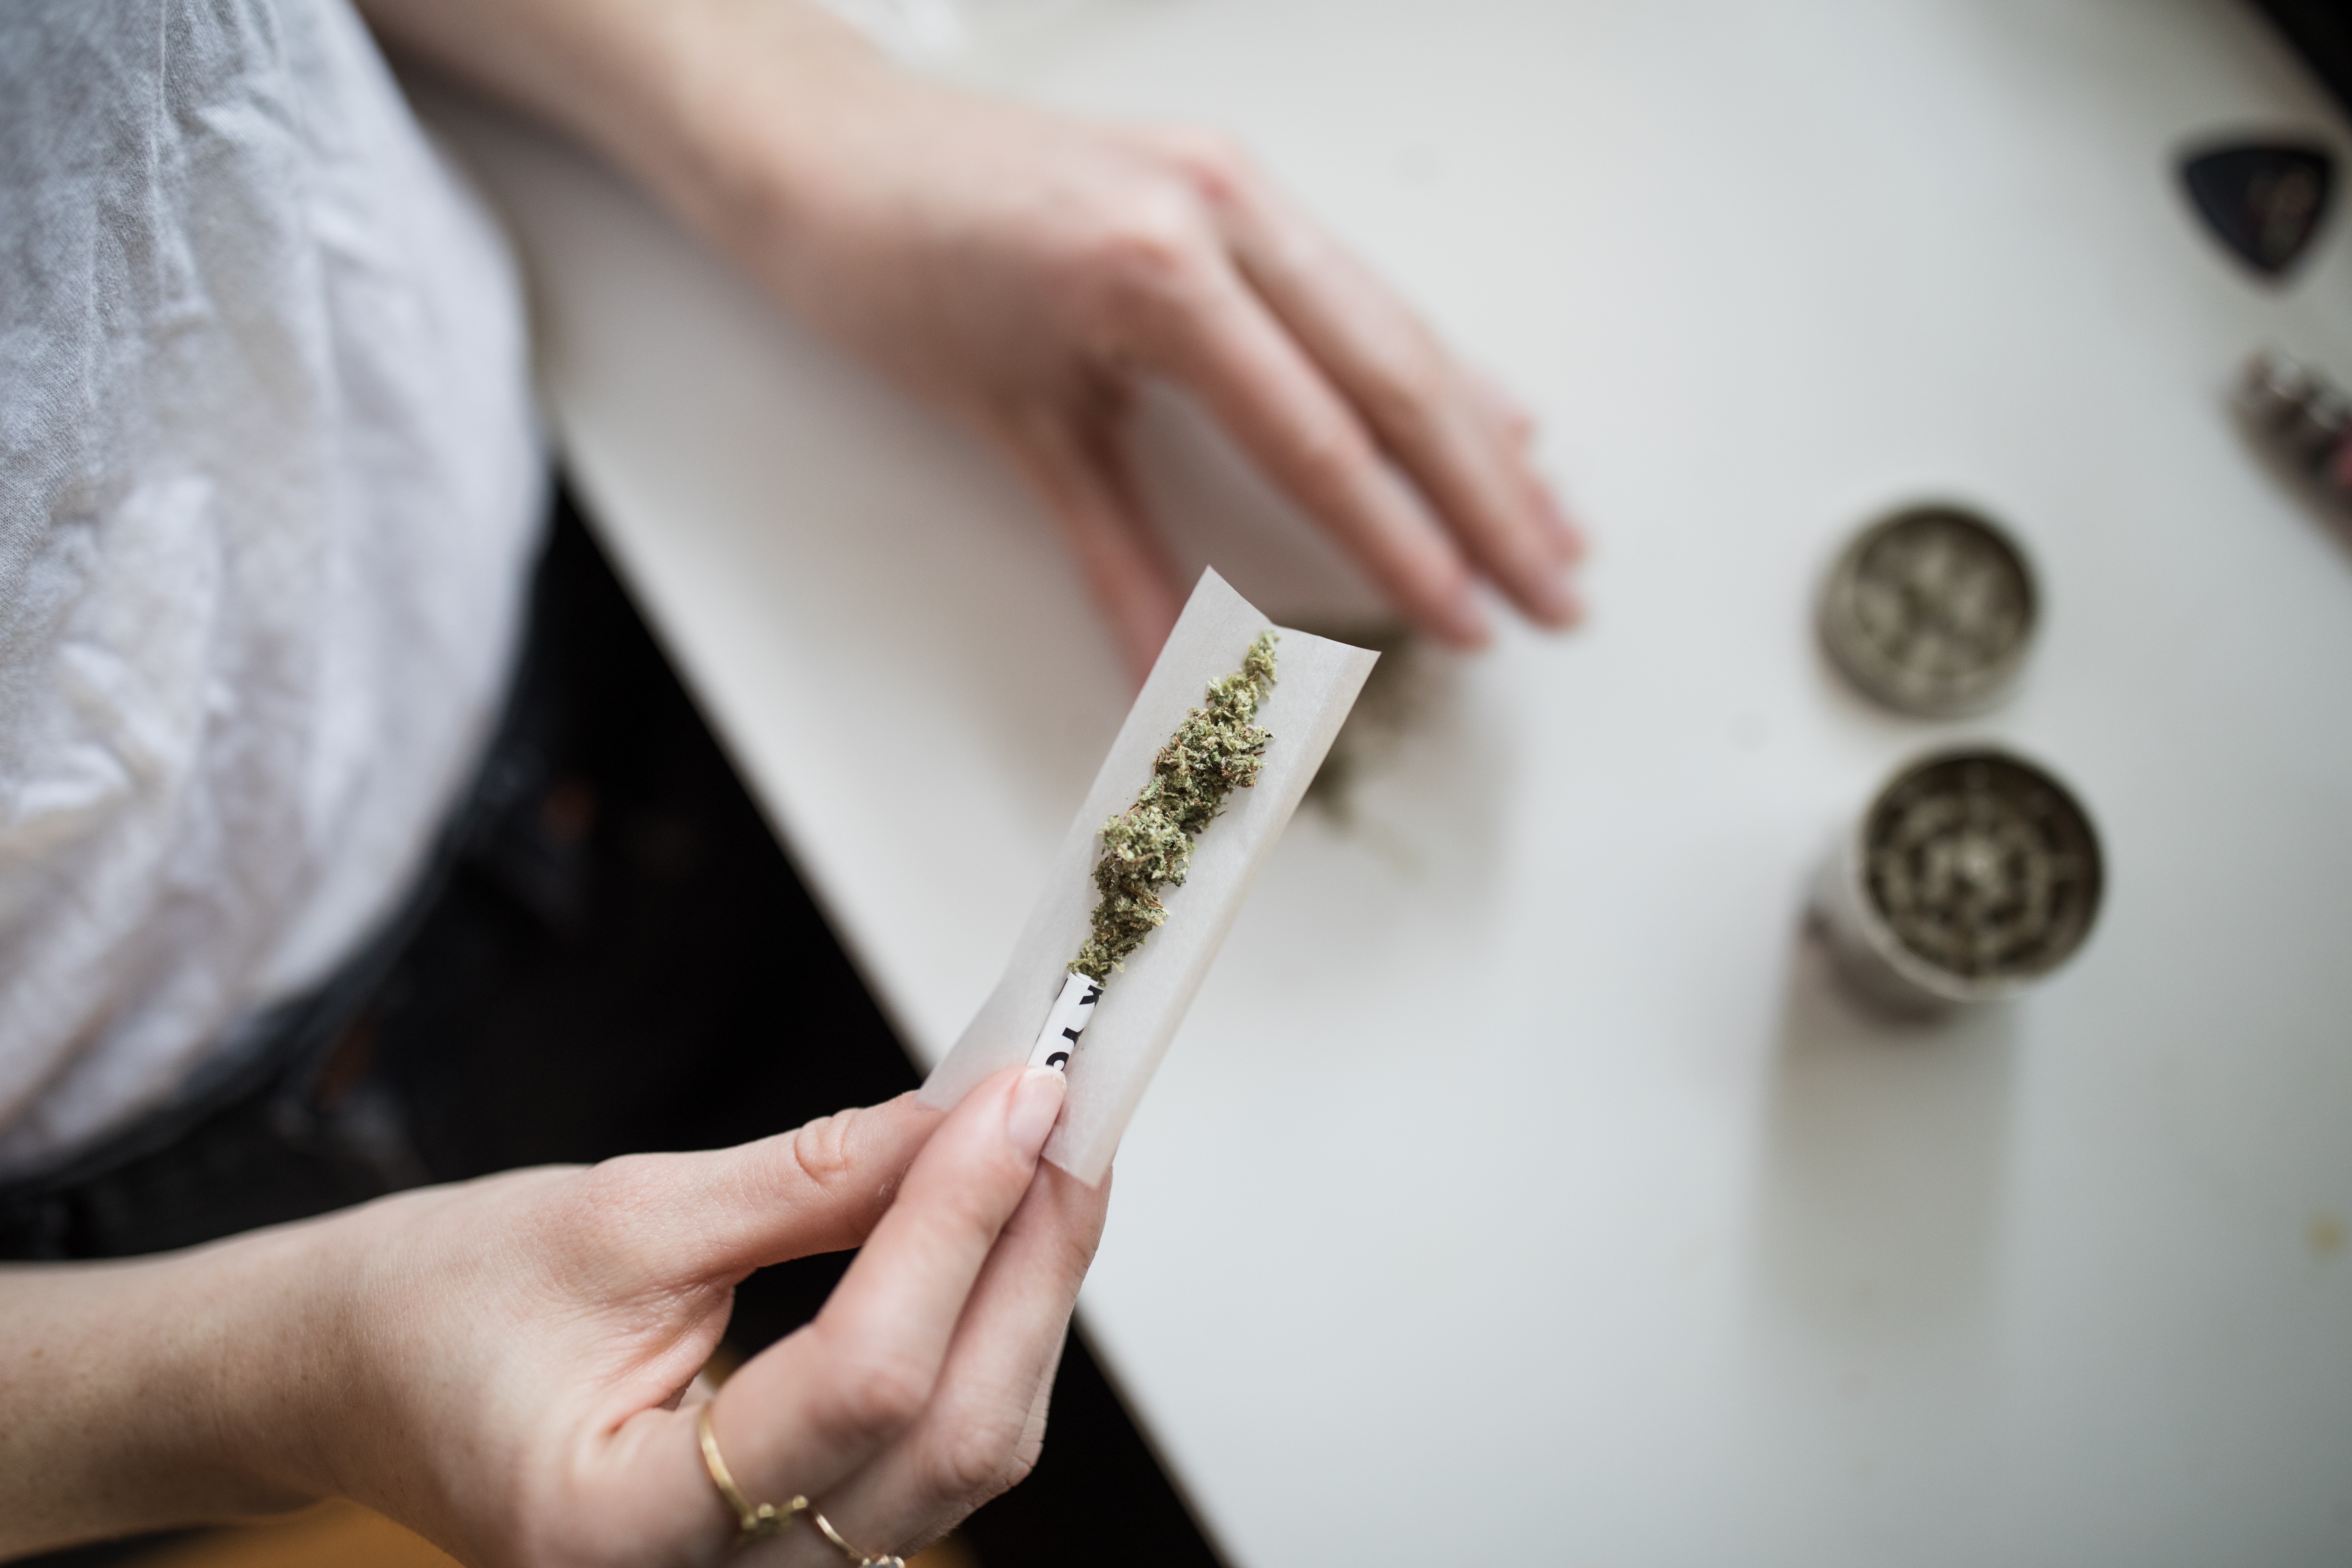 Kleine Anfrage an die Bundesregierung zur Legalisierung von Cannabis